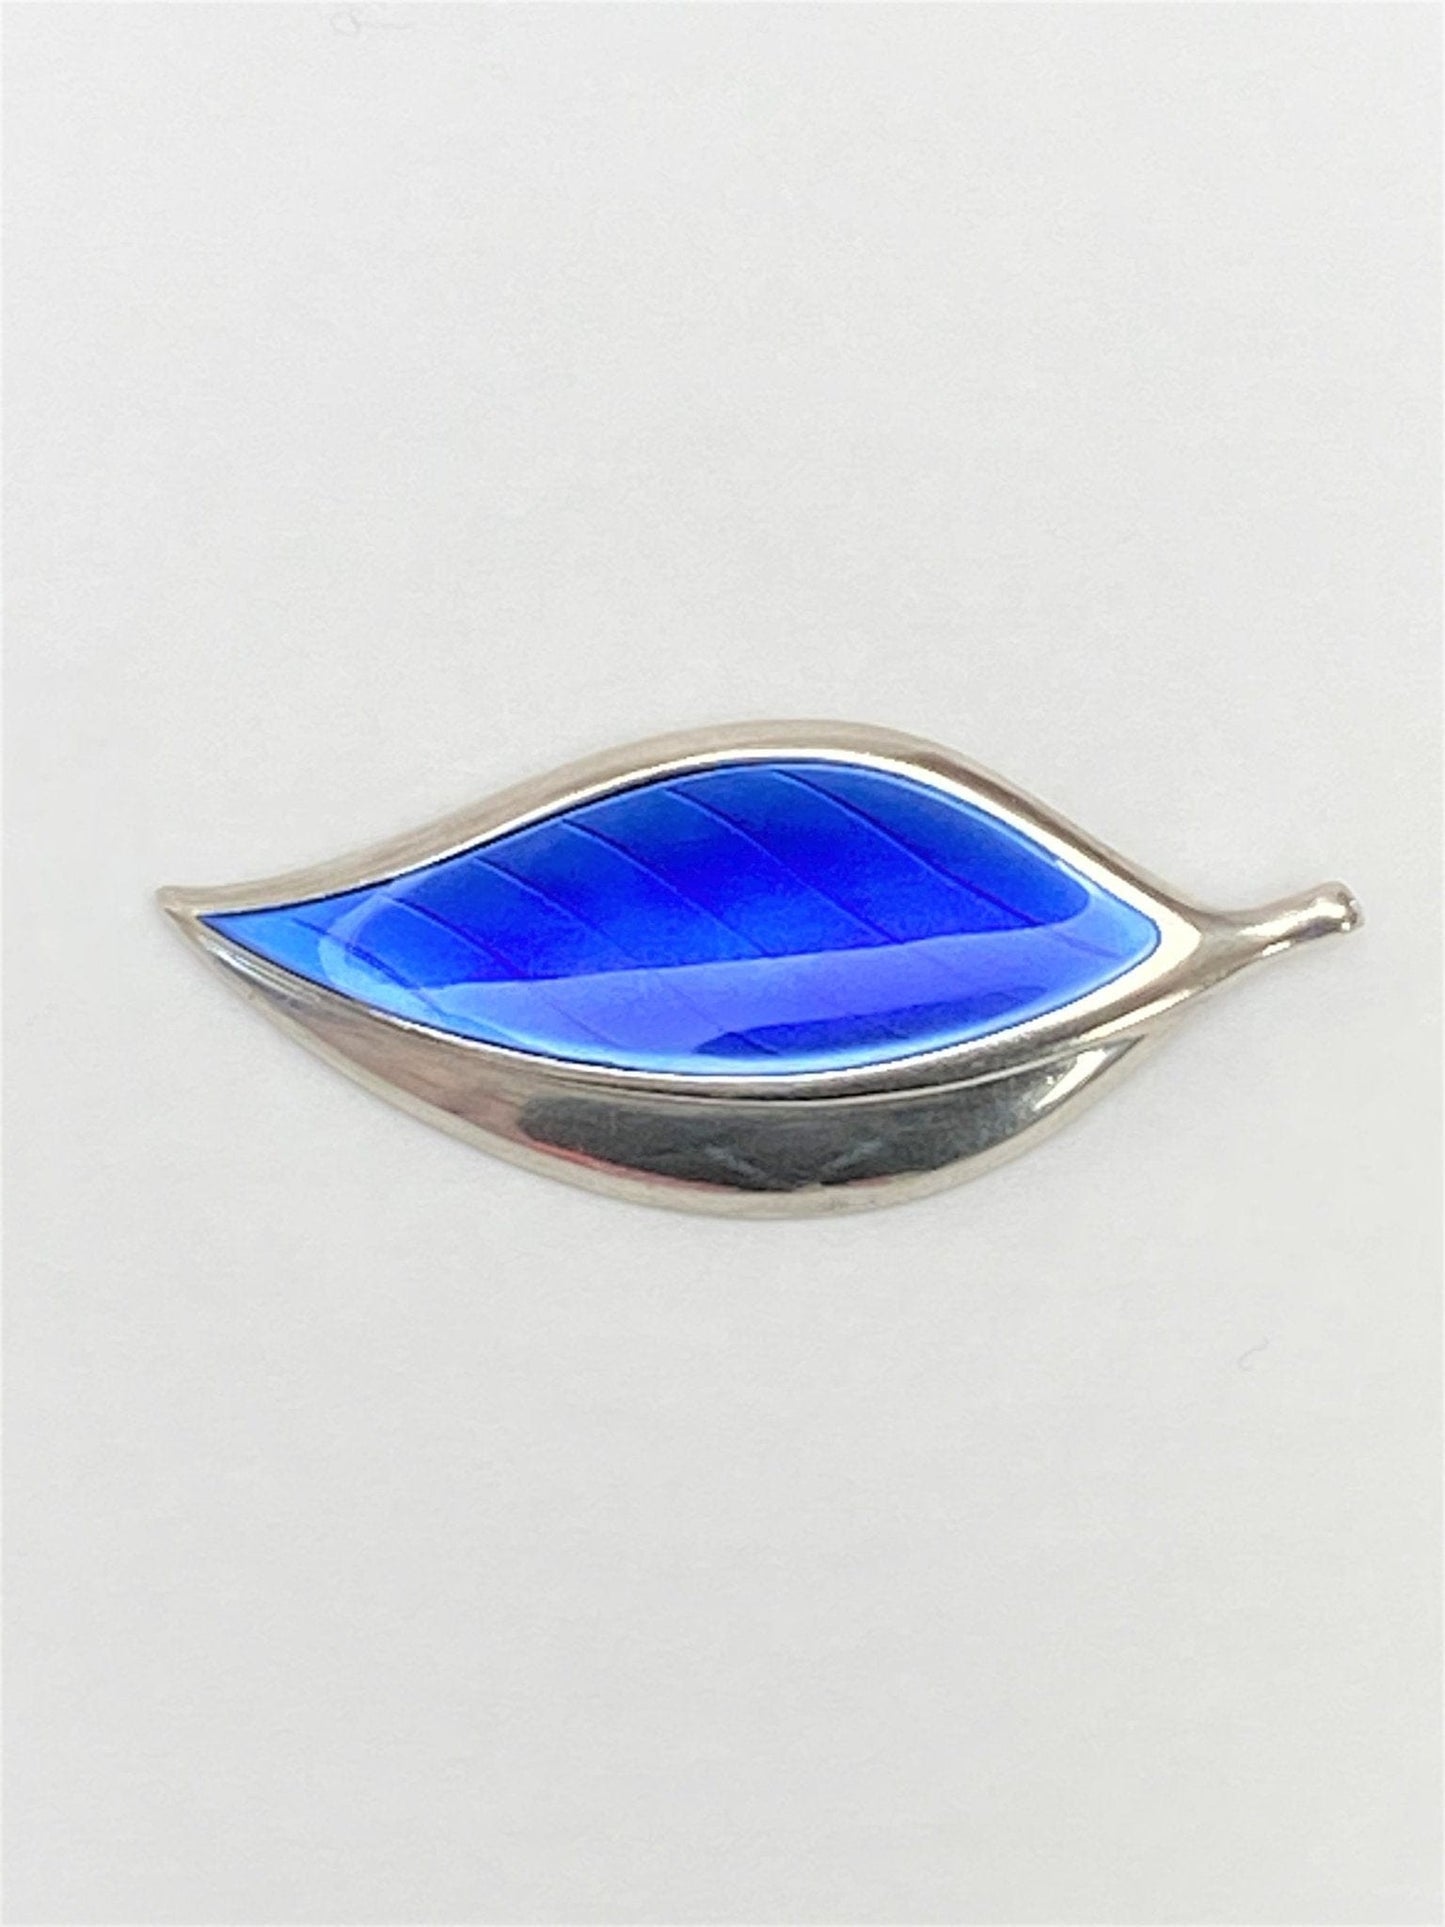 David Andersen Jewelry VTG David Andersen 925SS & Royal Blue Enamel Leaf Converter Brooch Rare